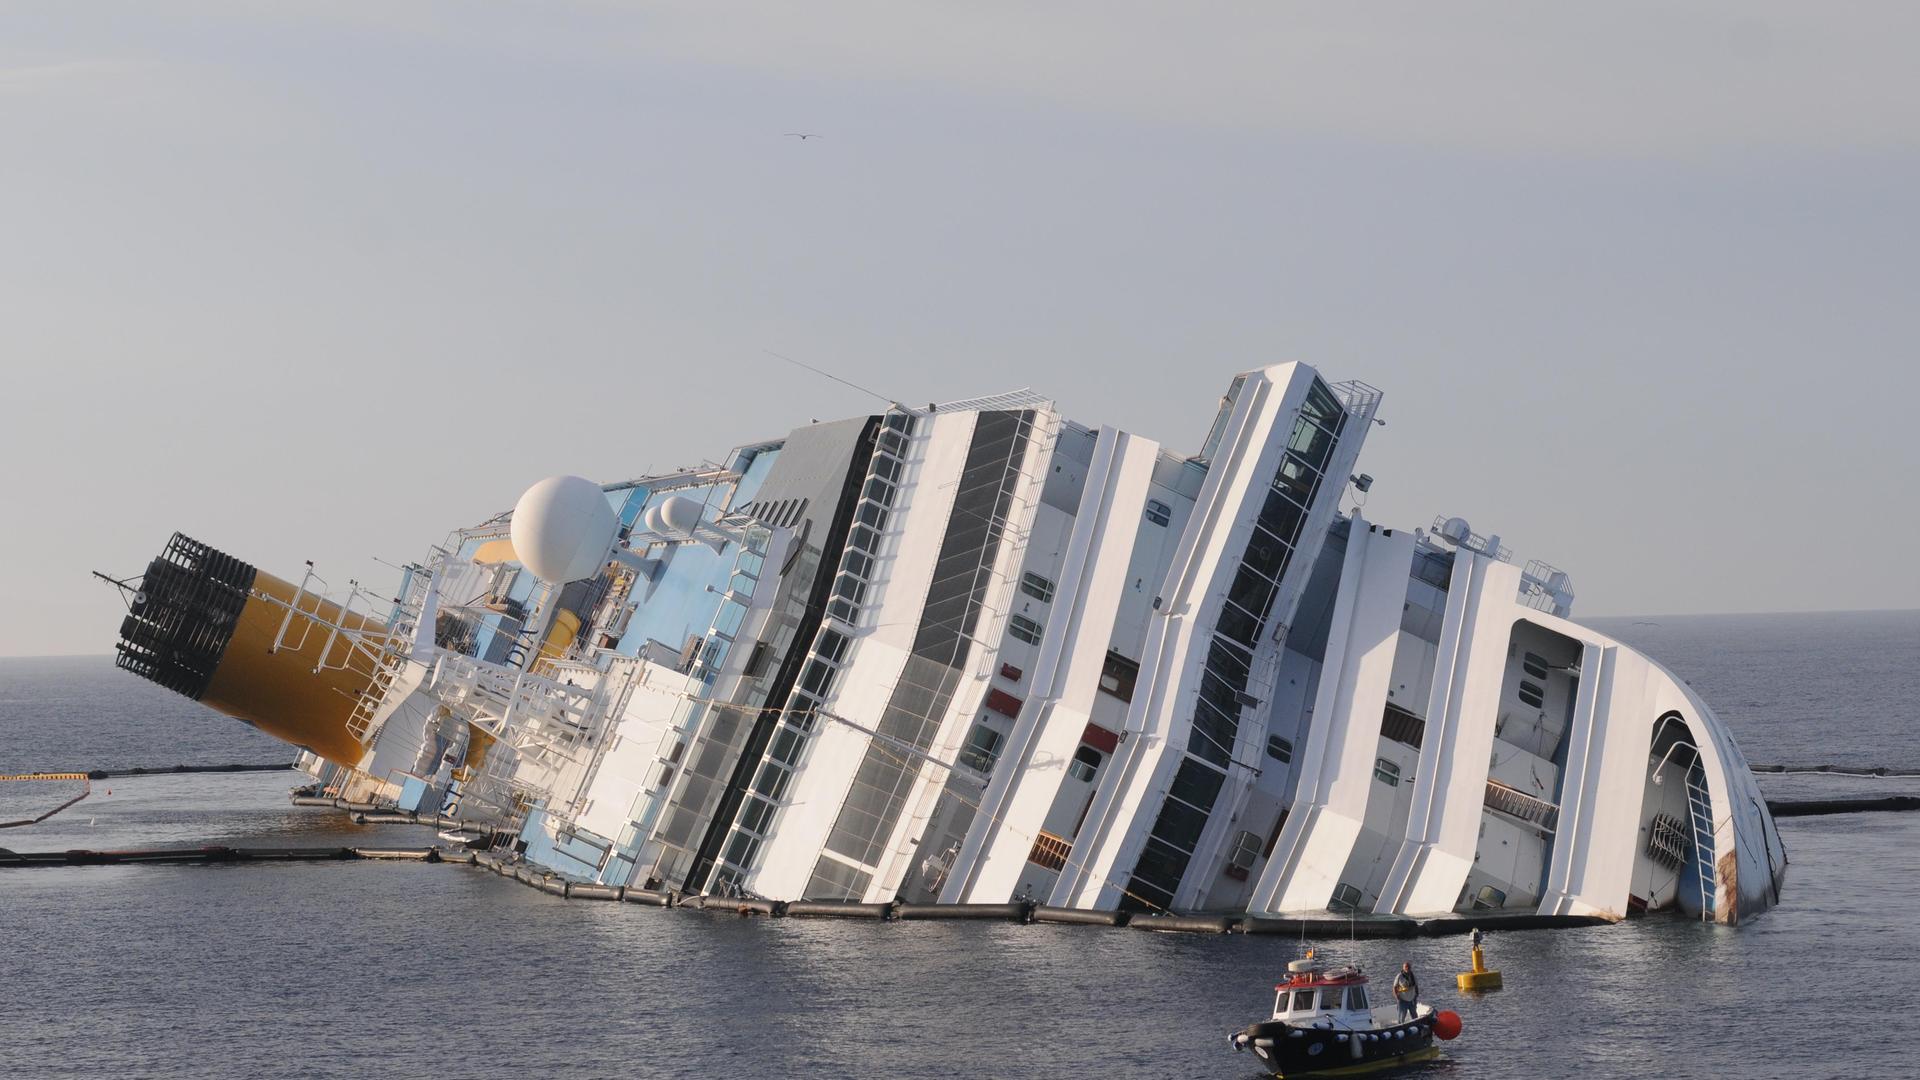 Das Kreuzfahrtschiff "Costa Concordia" im Juni 2012, mit einer Schlagseite von fas 90 Prozent , fünf Monate nachdem es vor der italienischen Insel Giglio auf Grund gelaufen war